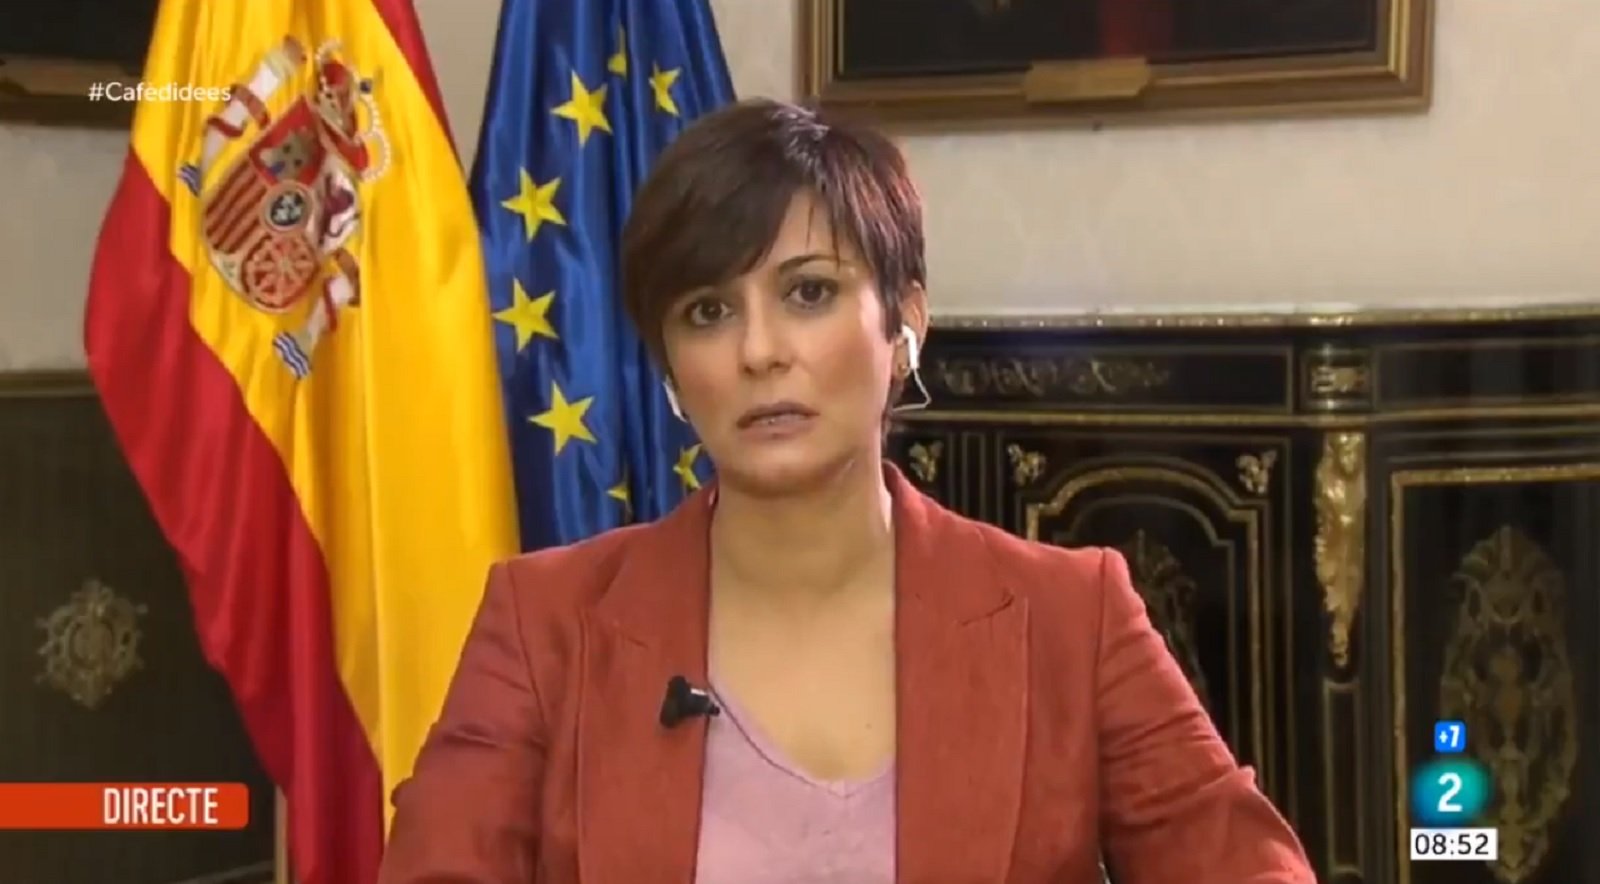 El gobierno Sánchez evita nombrar a Puigdemont: "Este señor no representa nada"